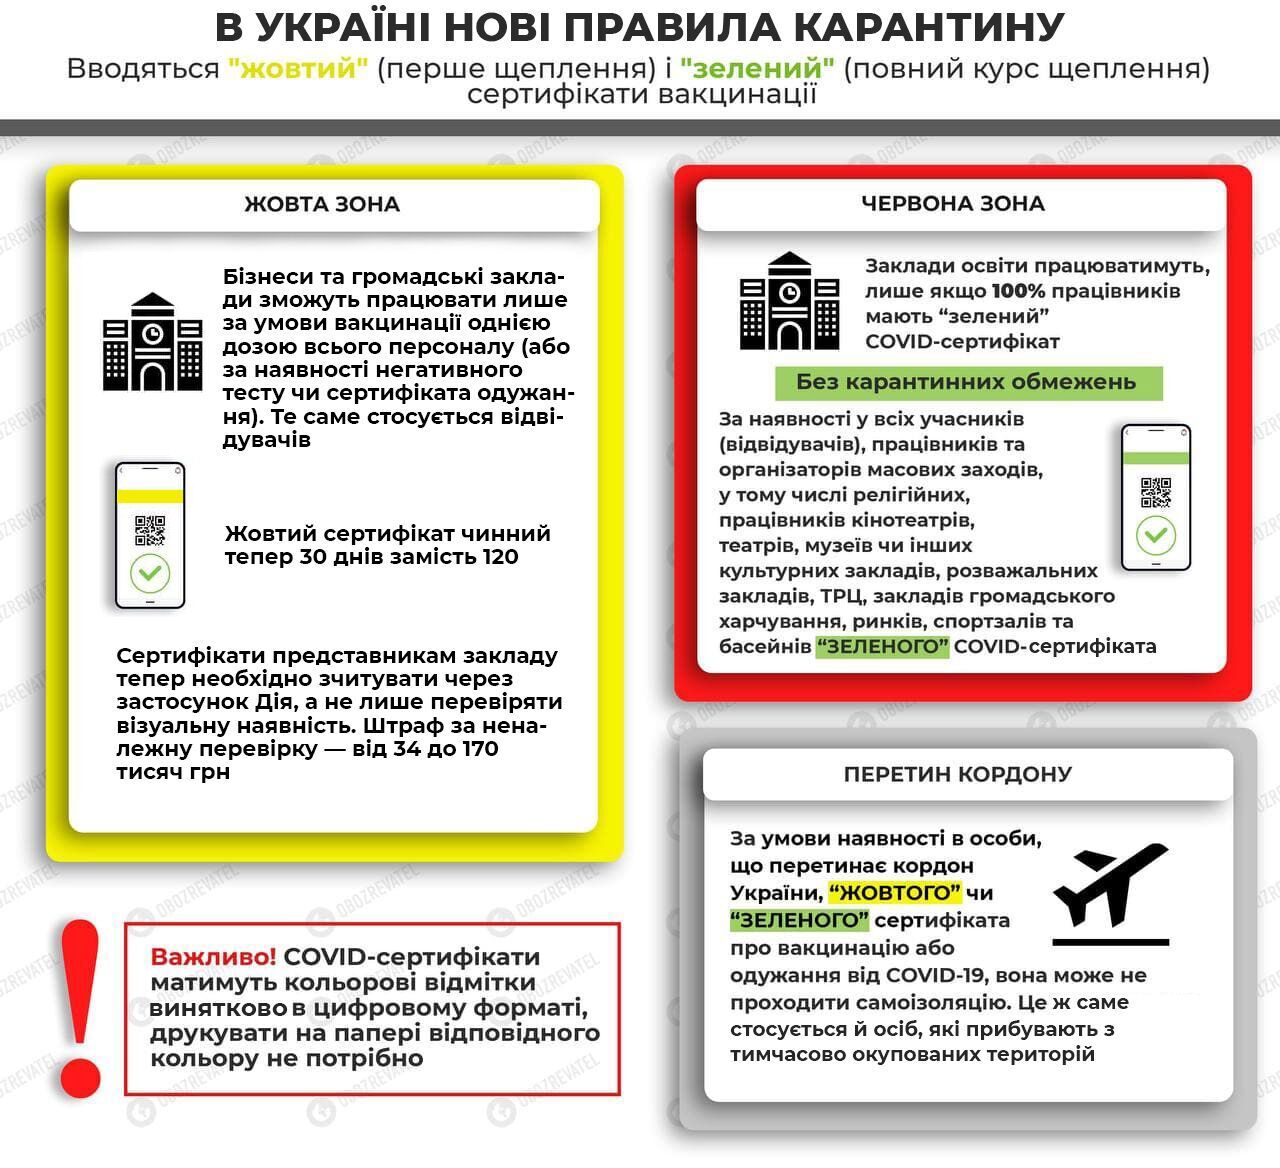 Правила карантину в Україні